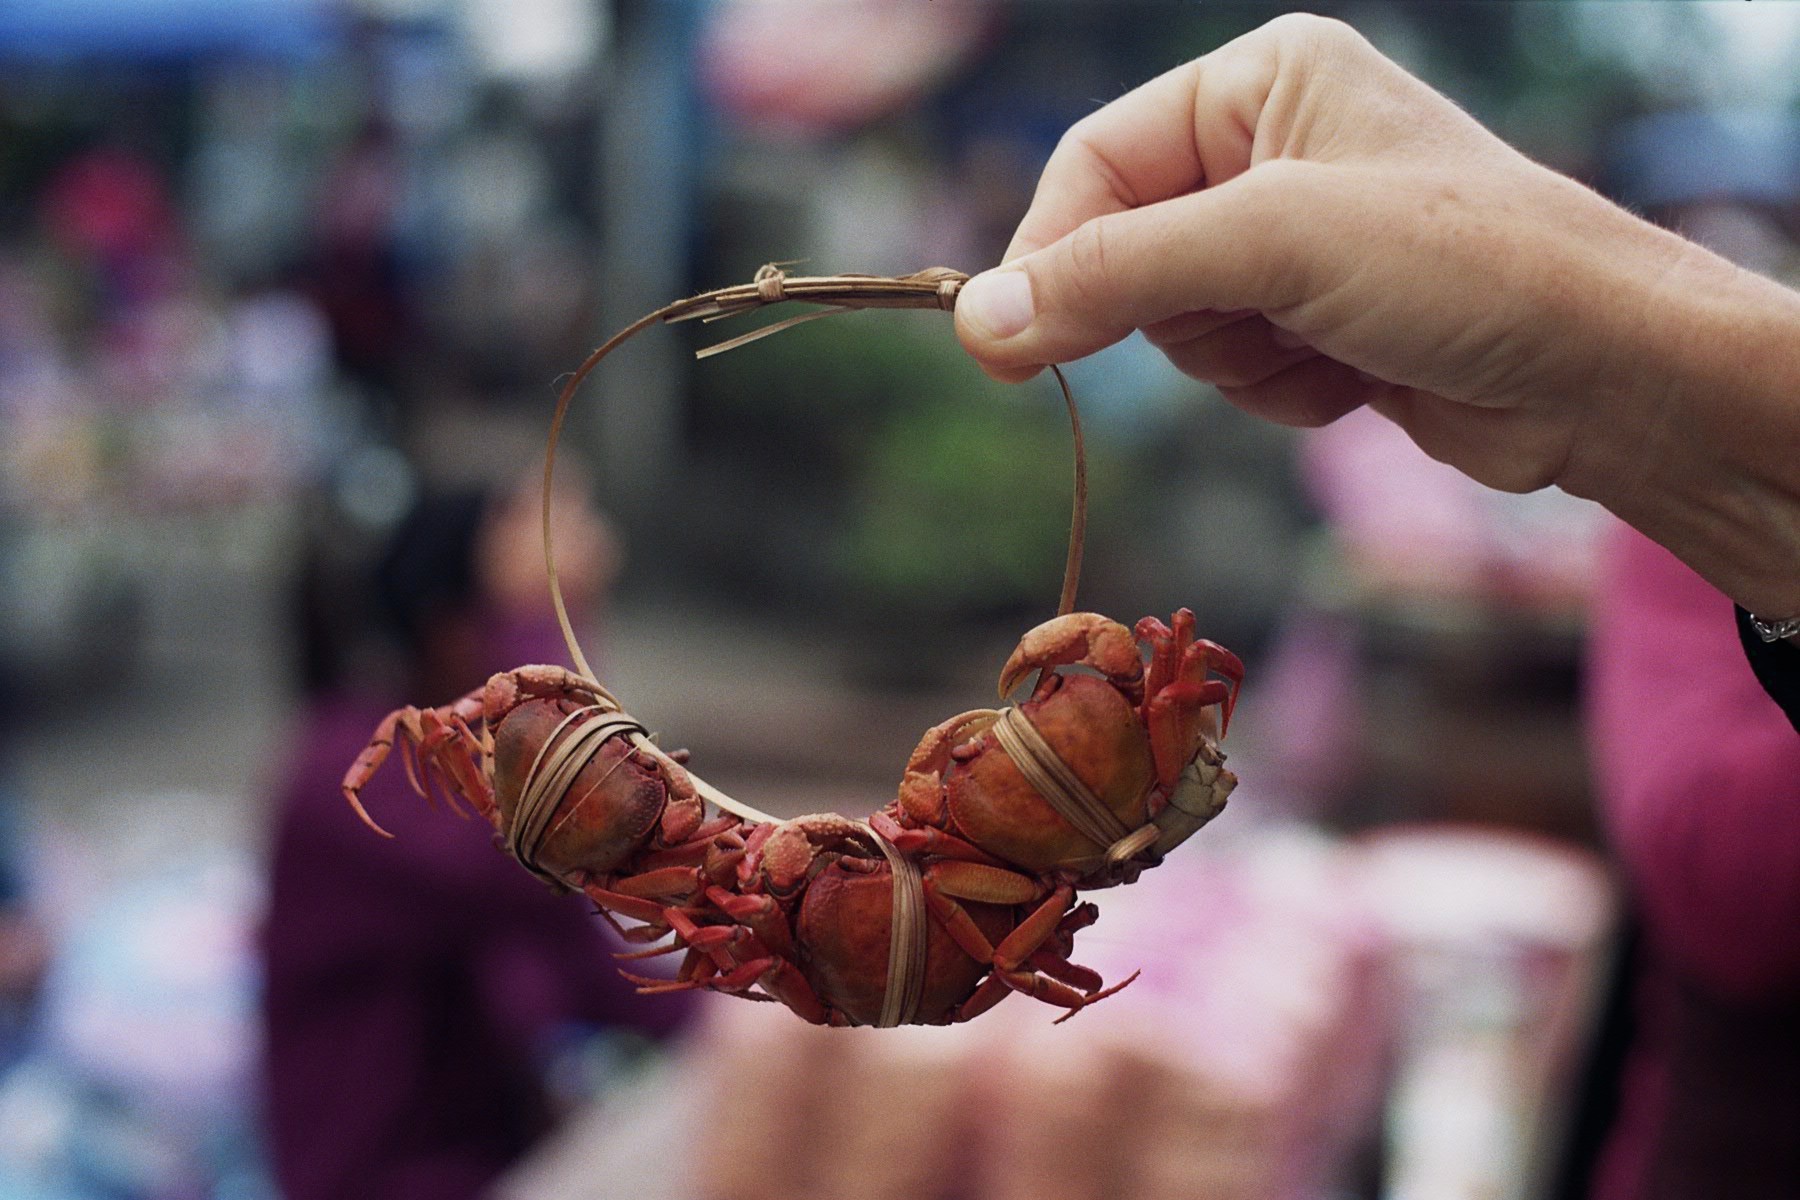 Cangrejos en un mercado local de Laos | Foto © Carme Bruch